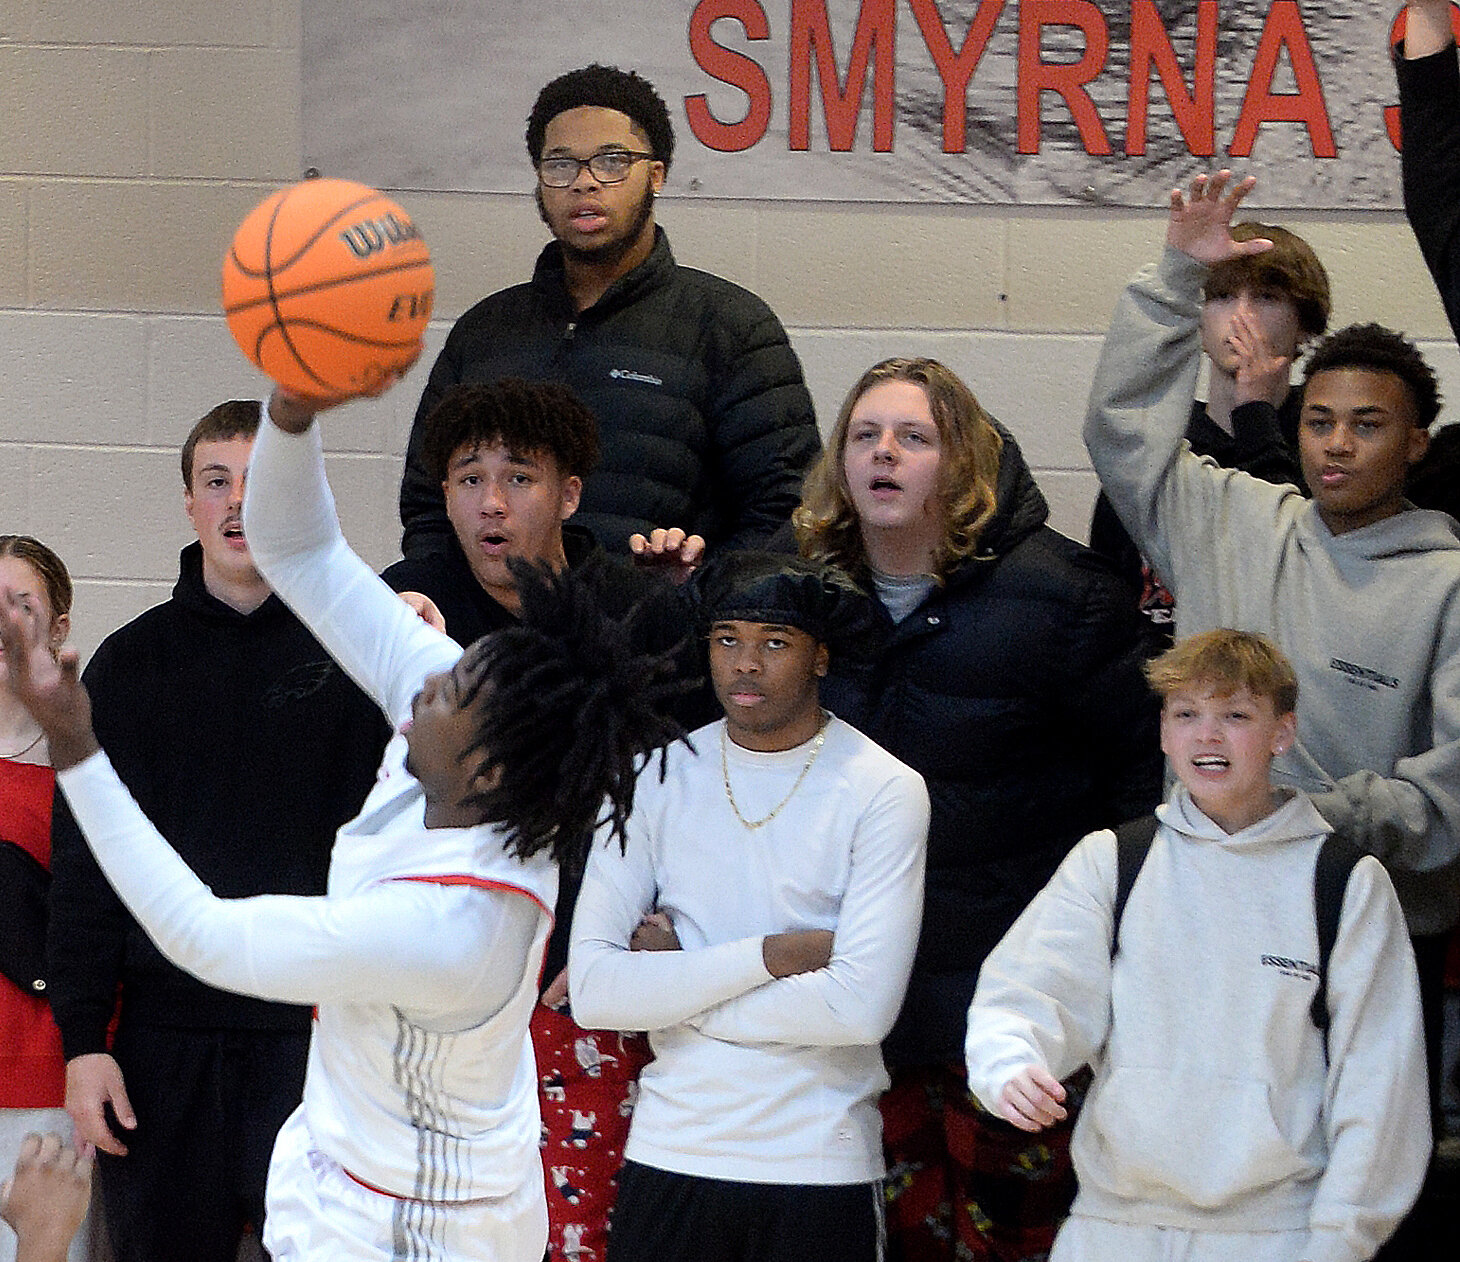 Photo gallery: Smyrna vs. Milford boys' basketball | Bay to Bay News